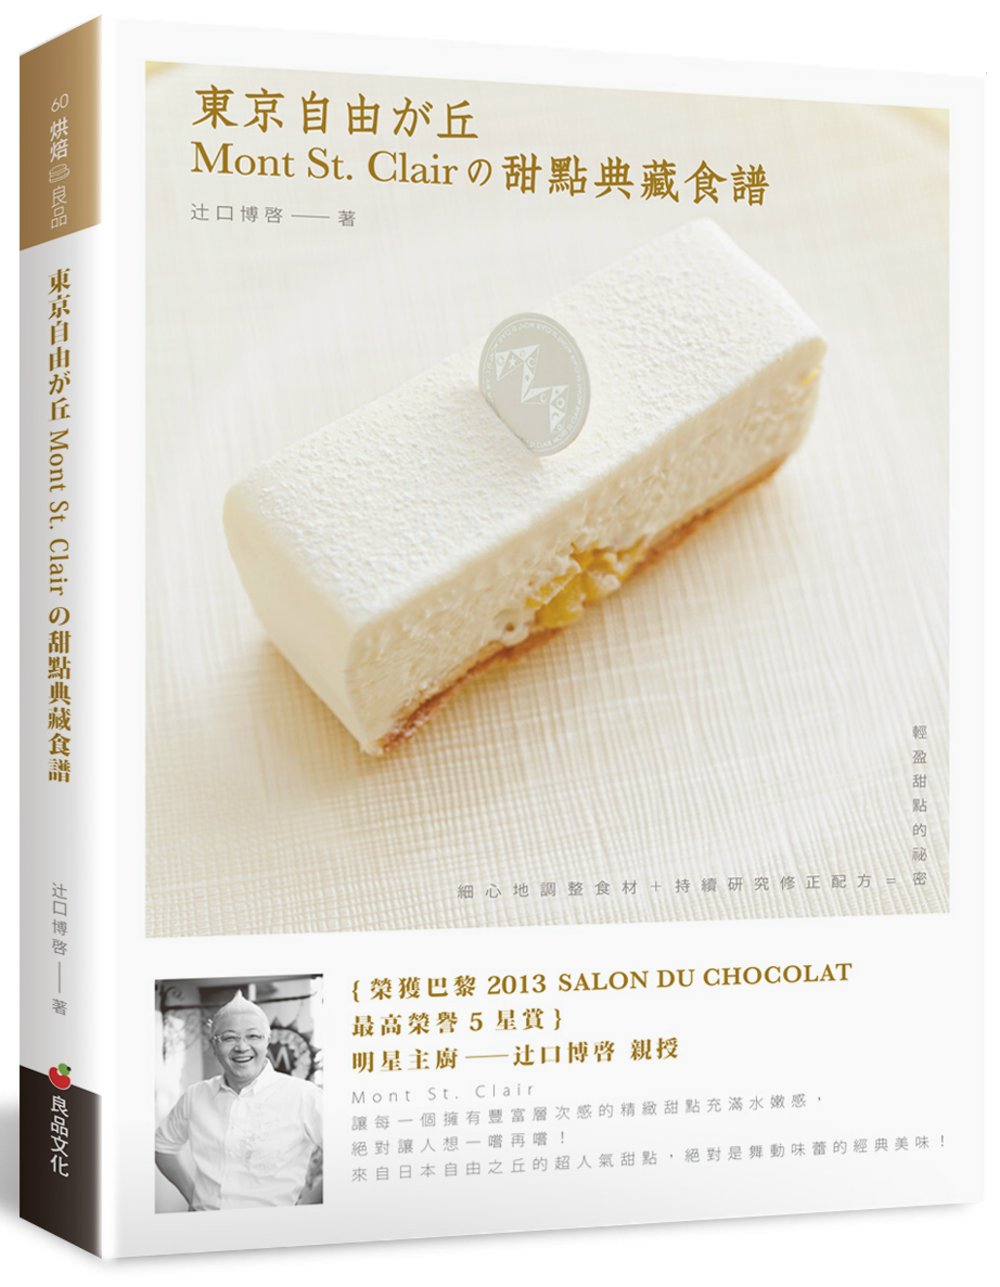 東京自由之丘Mont St. Clair的甜點典藏食譜